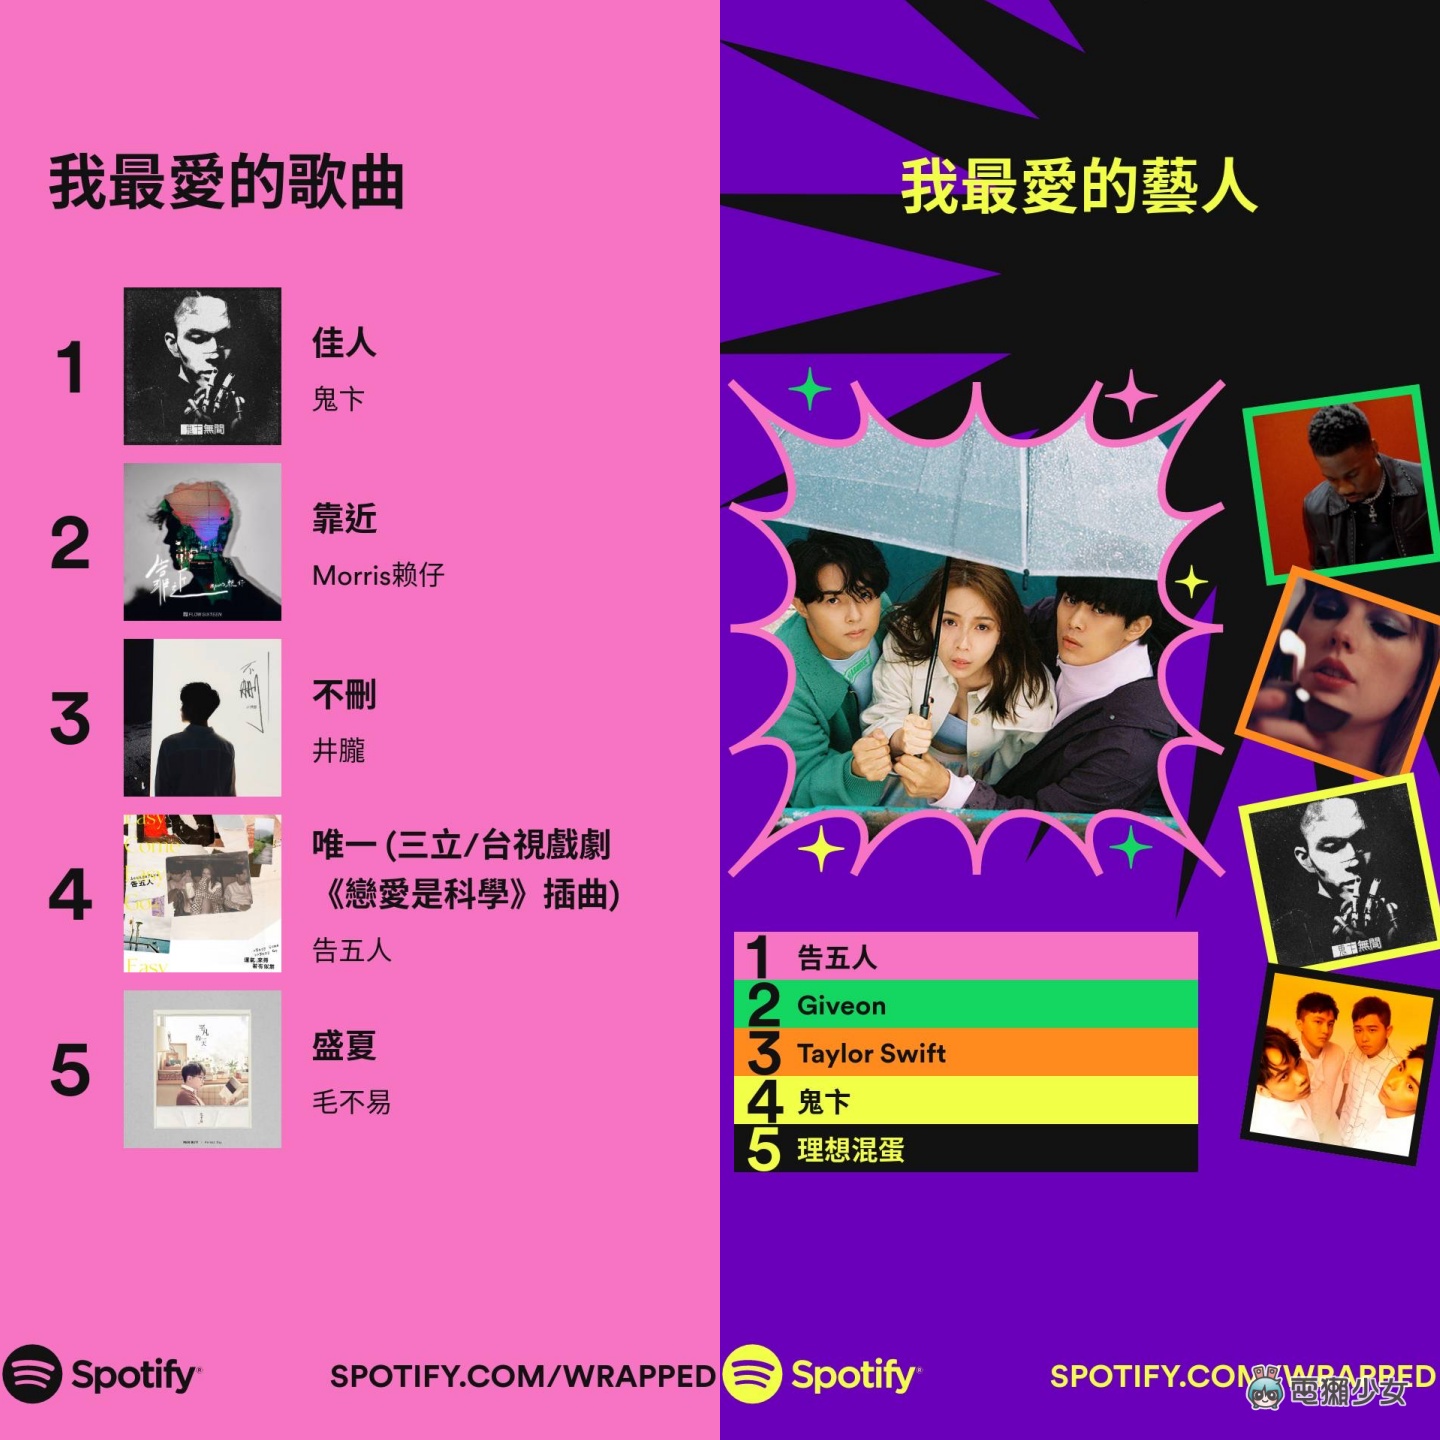 Spotify 年度回顧也來了！2022 年台灣最多人點播的歌手依舊是杰倫？新功能上線 快去測你是哪種聆聽性格